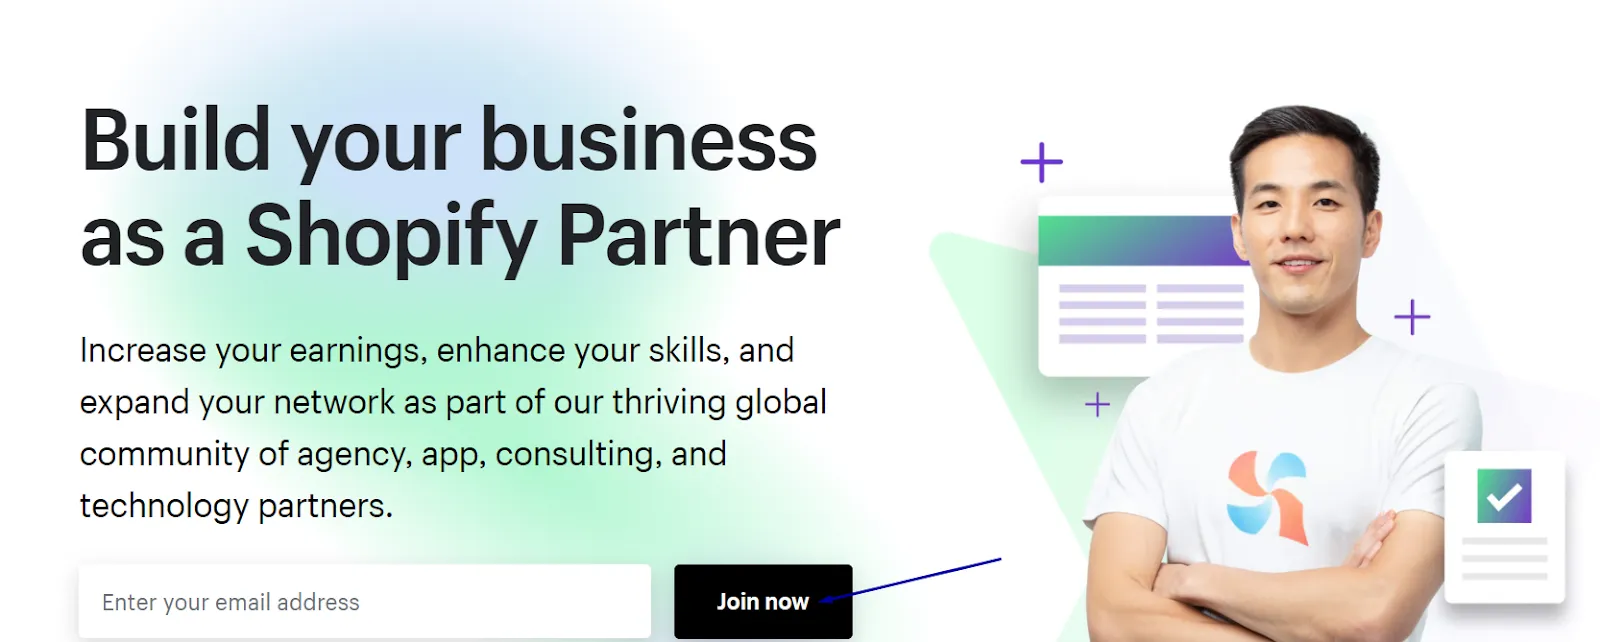 Join the Shopify Partner program